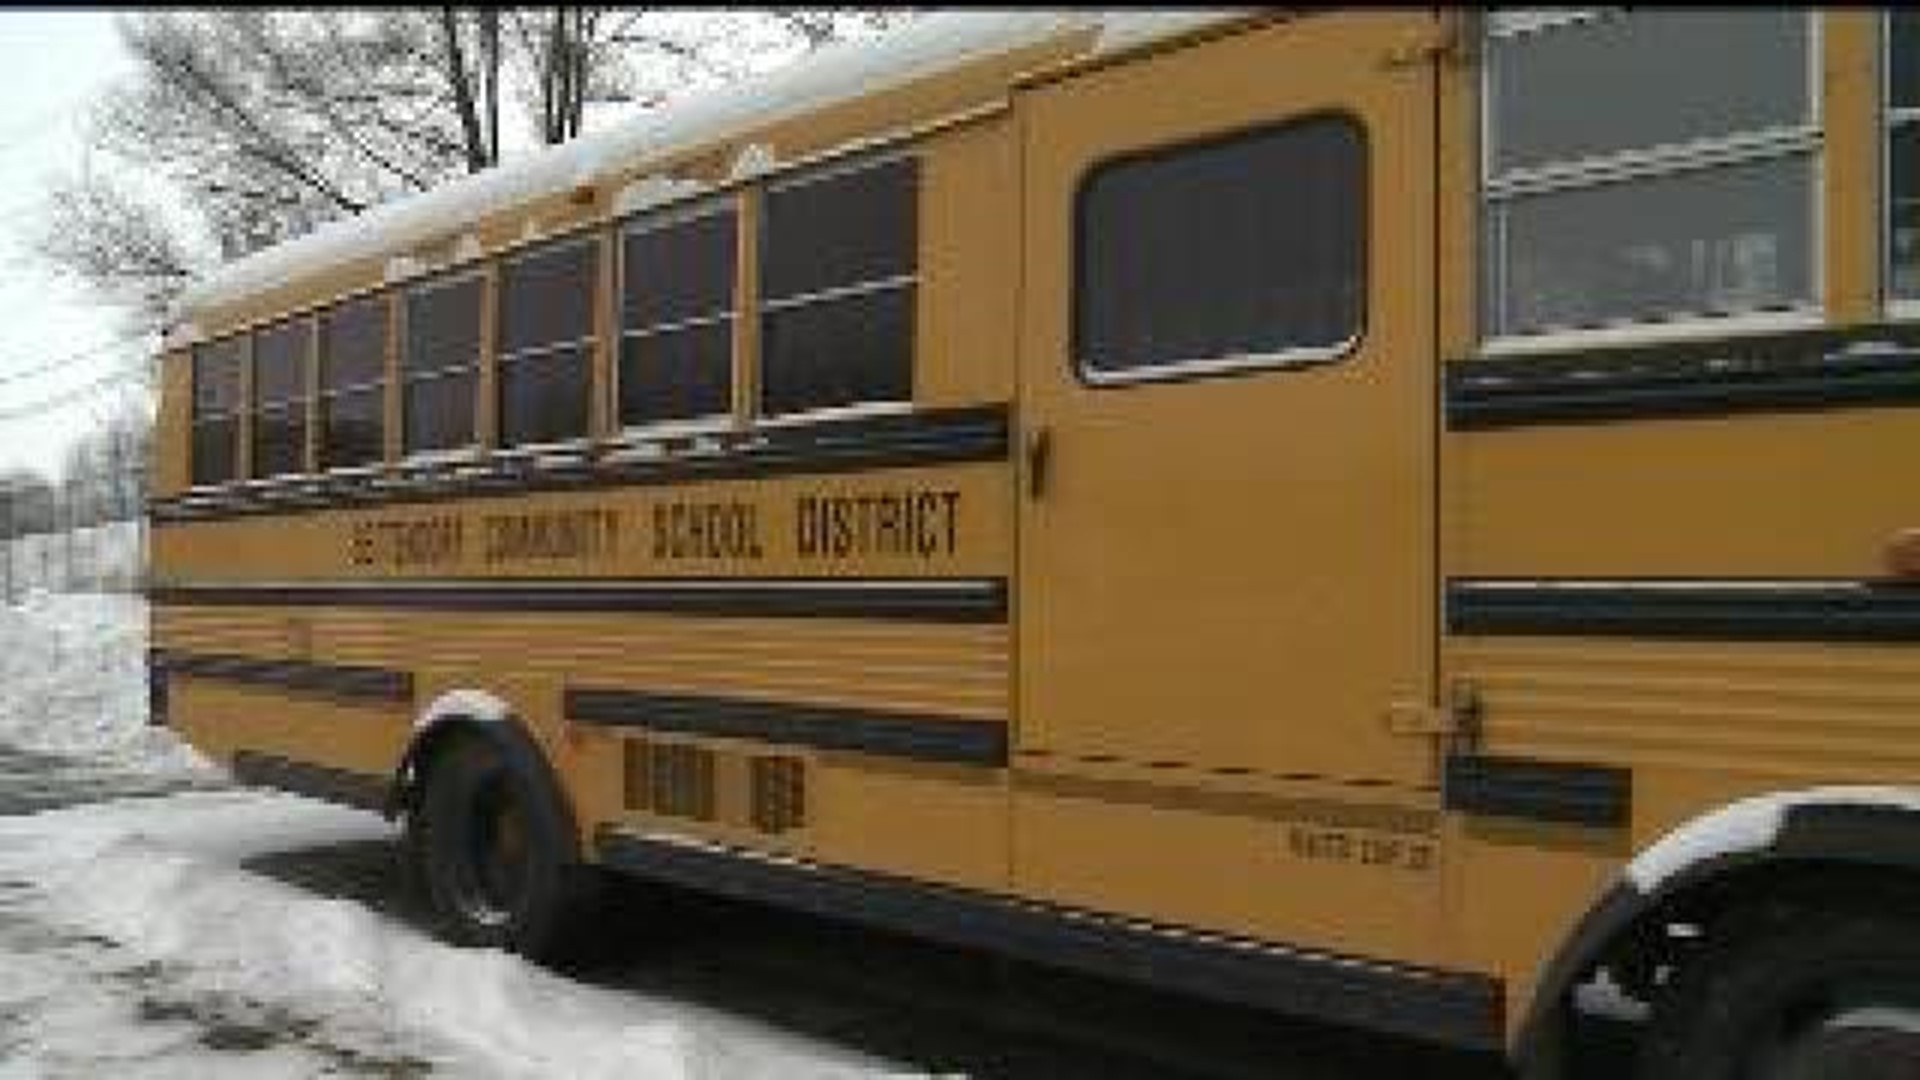 Subzero temperatures close schools in the Quad City Area